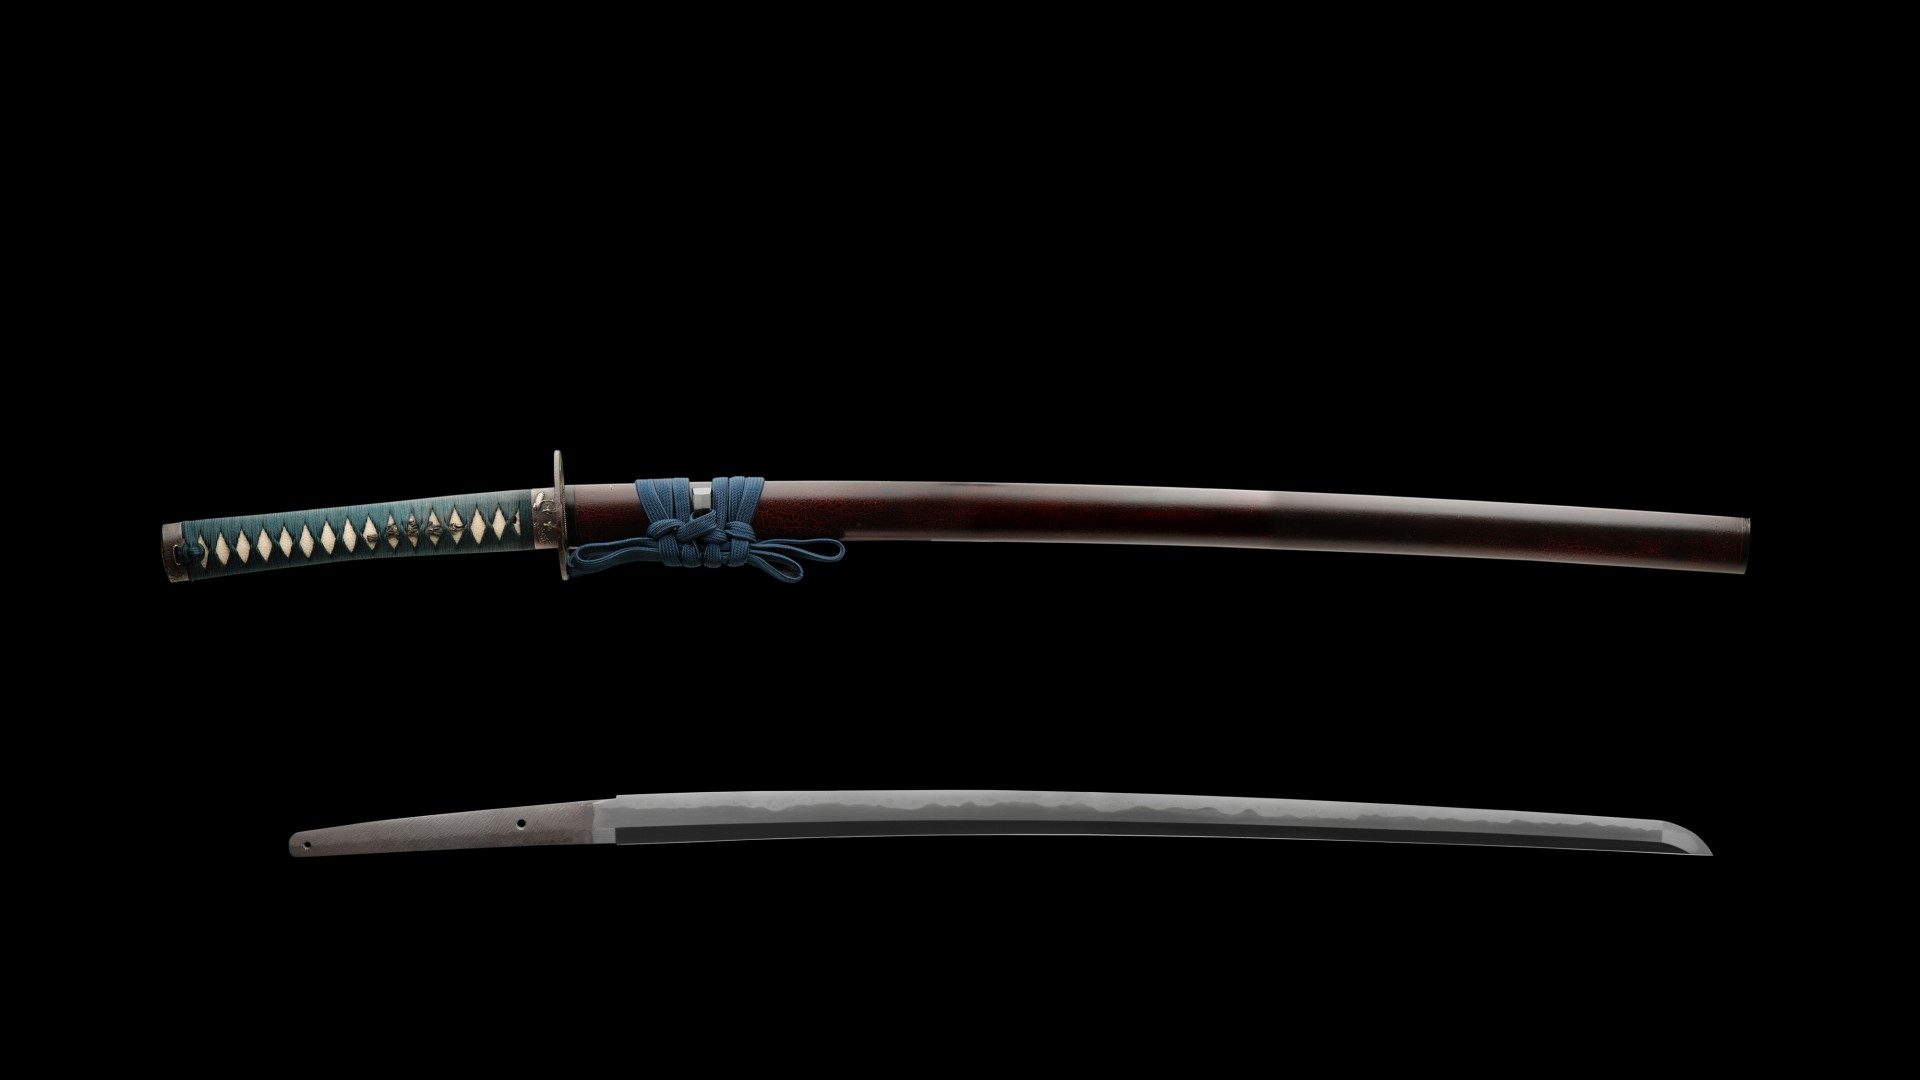 Samurai Sword Wallpaper Related Keywords Amp Suggestions